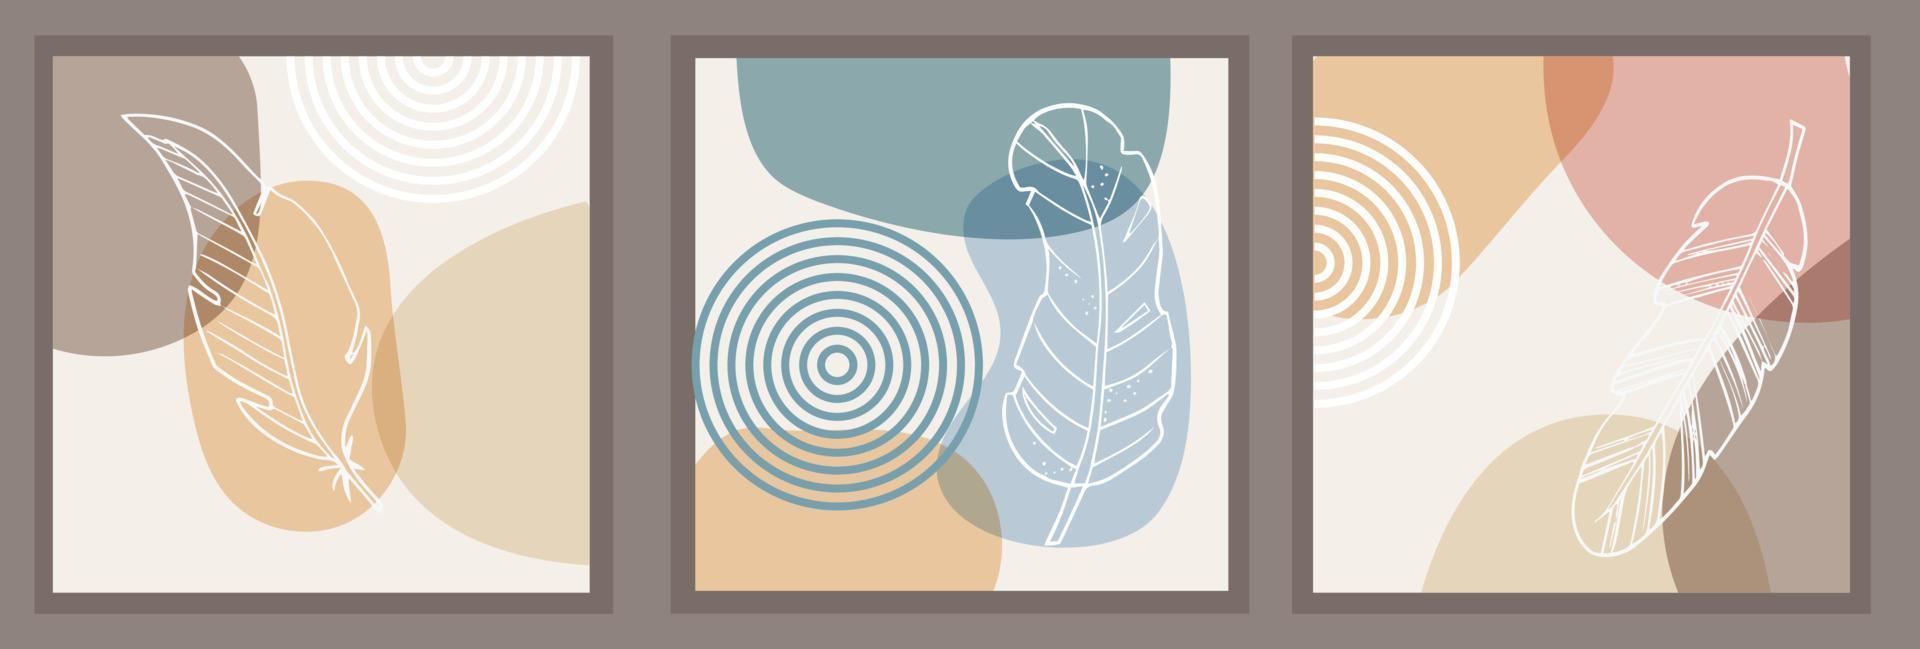 abstrakt mönster, organiska enkla former och naturliga botaniska element. collagestil, minimal och naturlig väggkonst. pastell jordnära färger. vektorbanderoller för vykort och omslag för sociala medier vektor